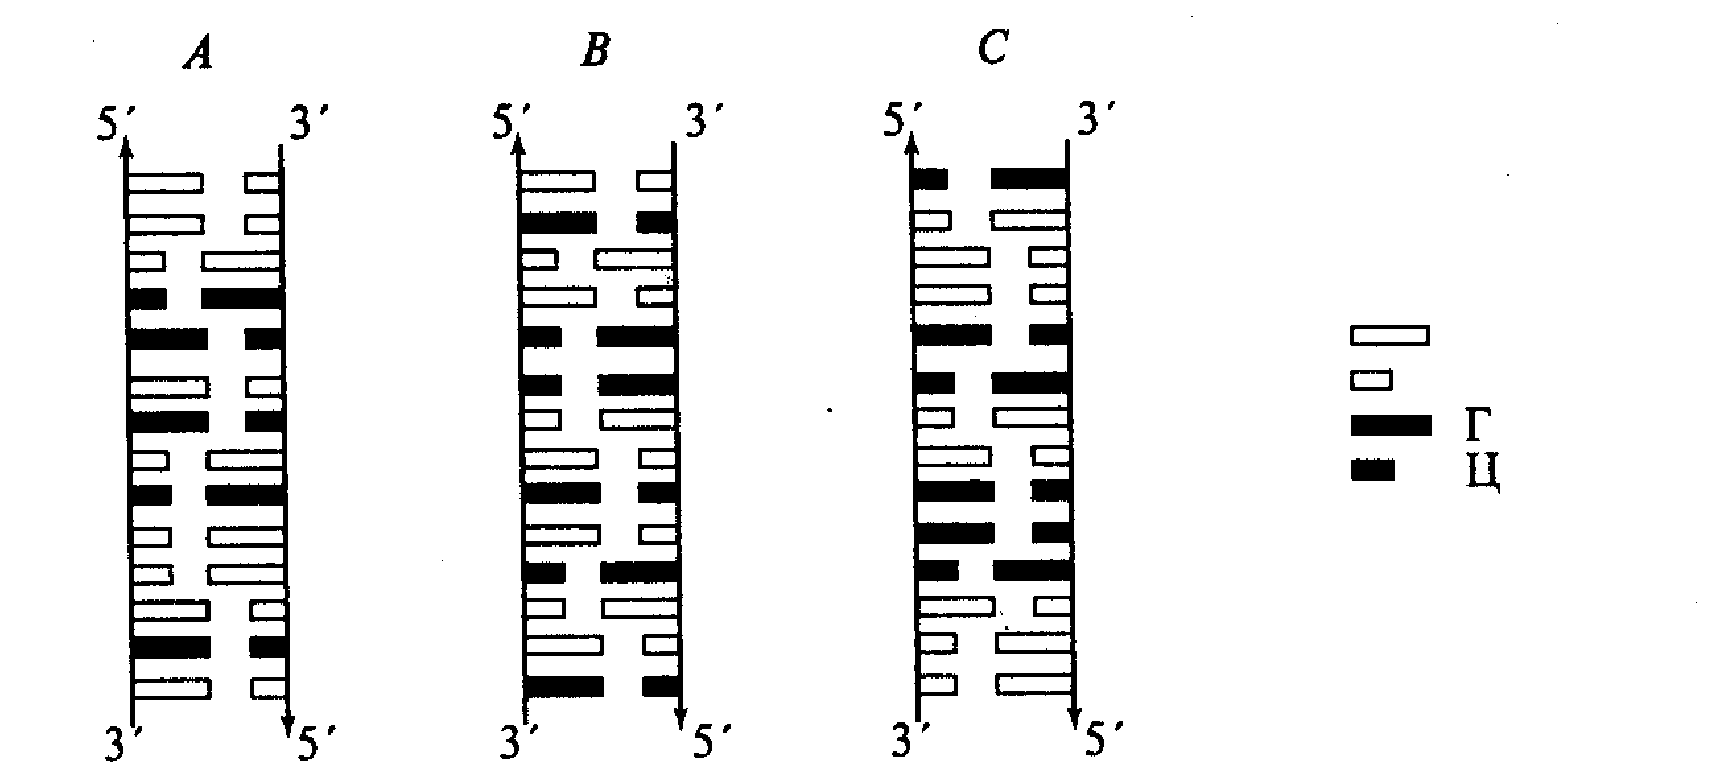 Второй третий фрагменты. Двухцепочная ДНК. Диаграммные изображения двух двухцепочечных фрагментов ДНК. Последовательность нуклеотидов в двухцепочечной молекуле ДНК. Диаграмма лестница.